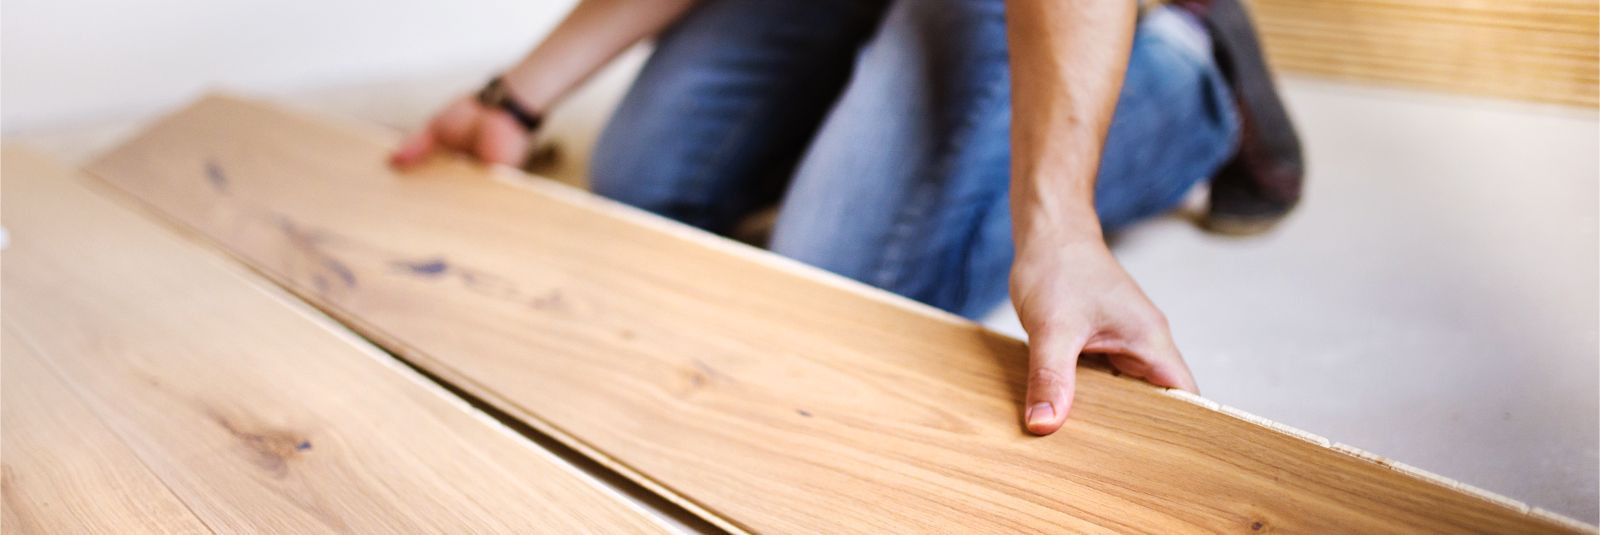 Teie kodu põrand on rohkemat kui lihtsalt jalgade all olev pind. See on oluline element, mis mõjutab teie kodu üldist ilmet, hubasust ja funktsionaalsust. Põran